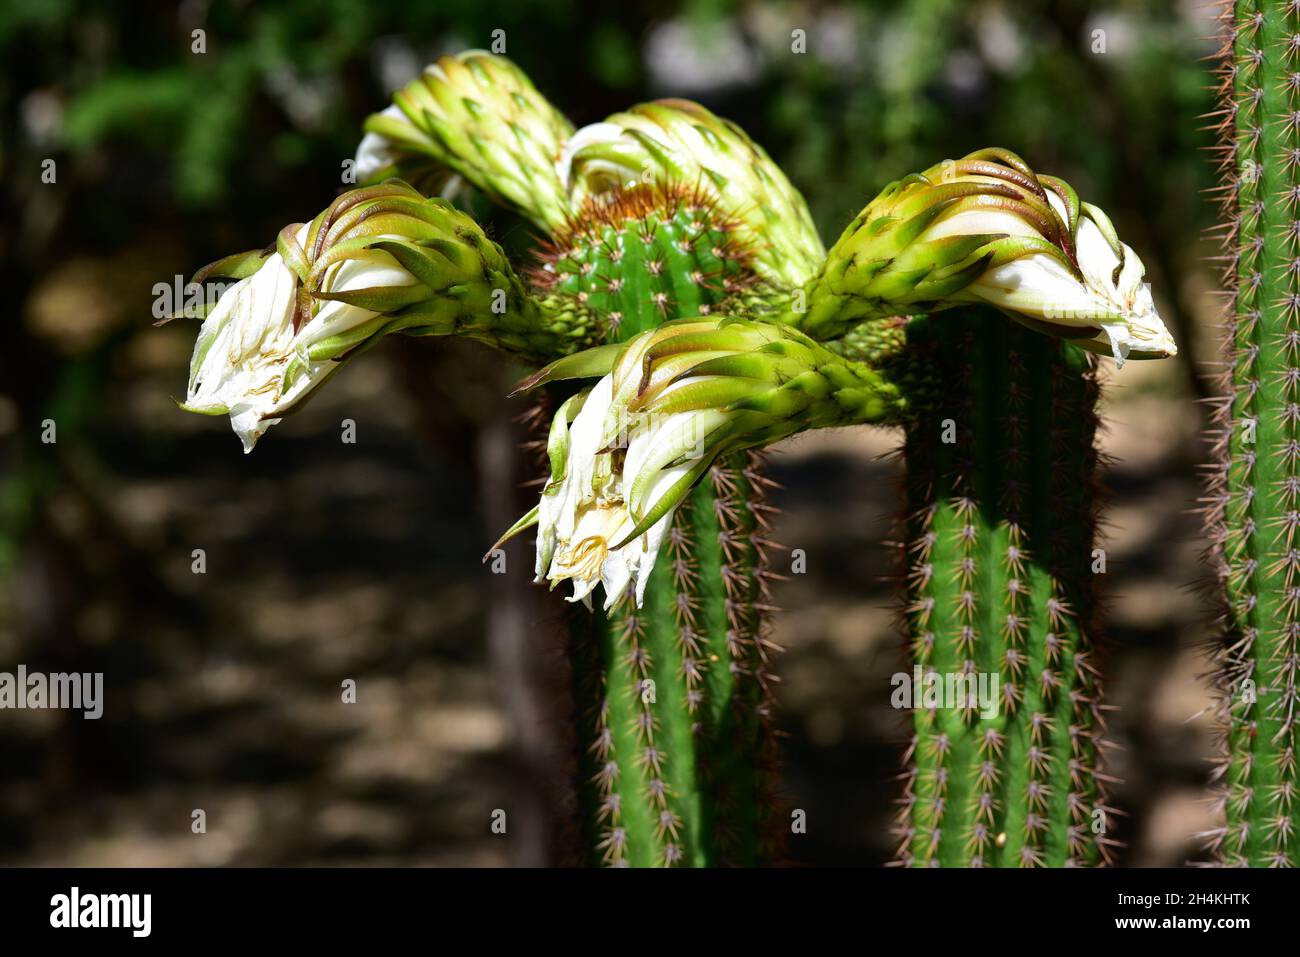 La antorcha de oro (Echinopsis spachiana) es un cactus nativo de Argentina. Foto de stock